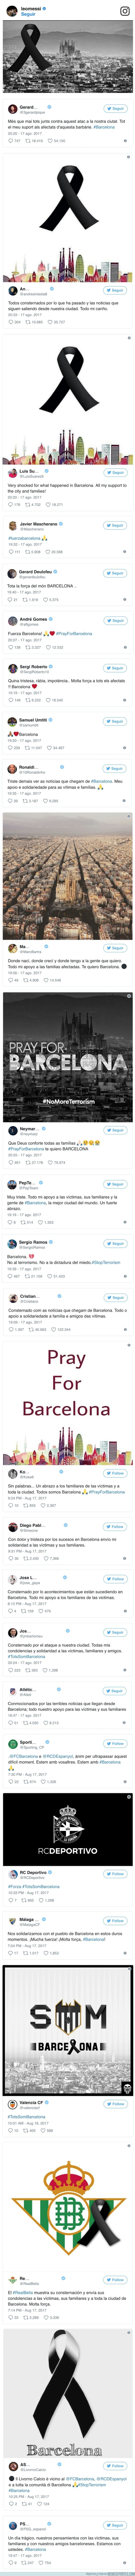 994226 - Las reacciones del mundo del fútbol ante el trágico atentado en Barcelona